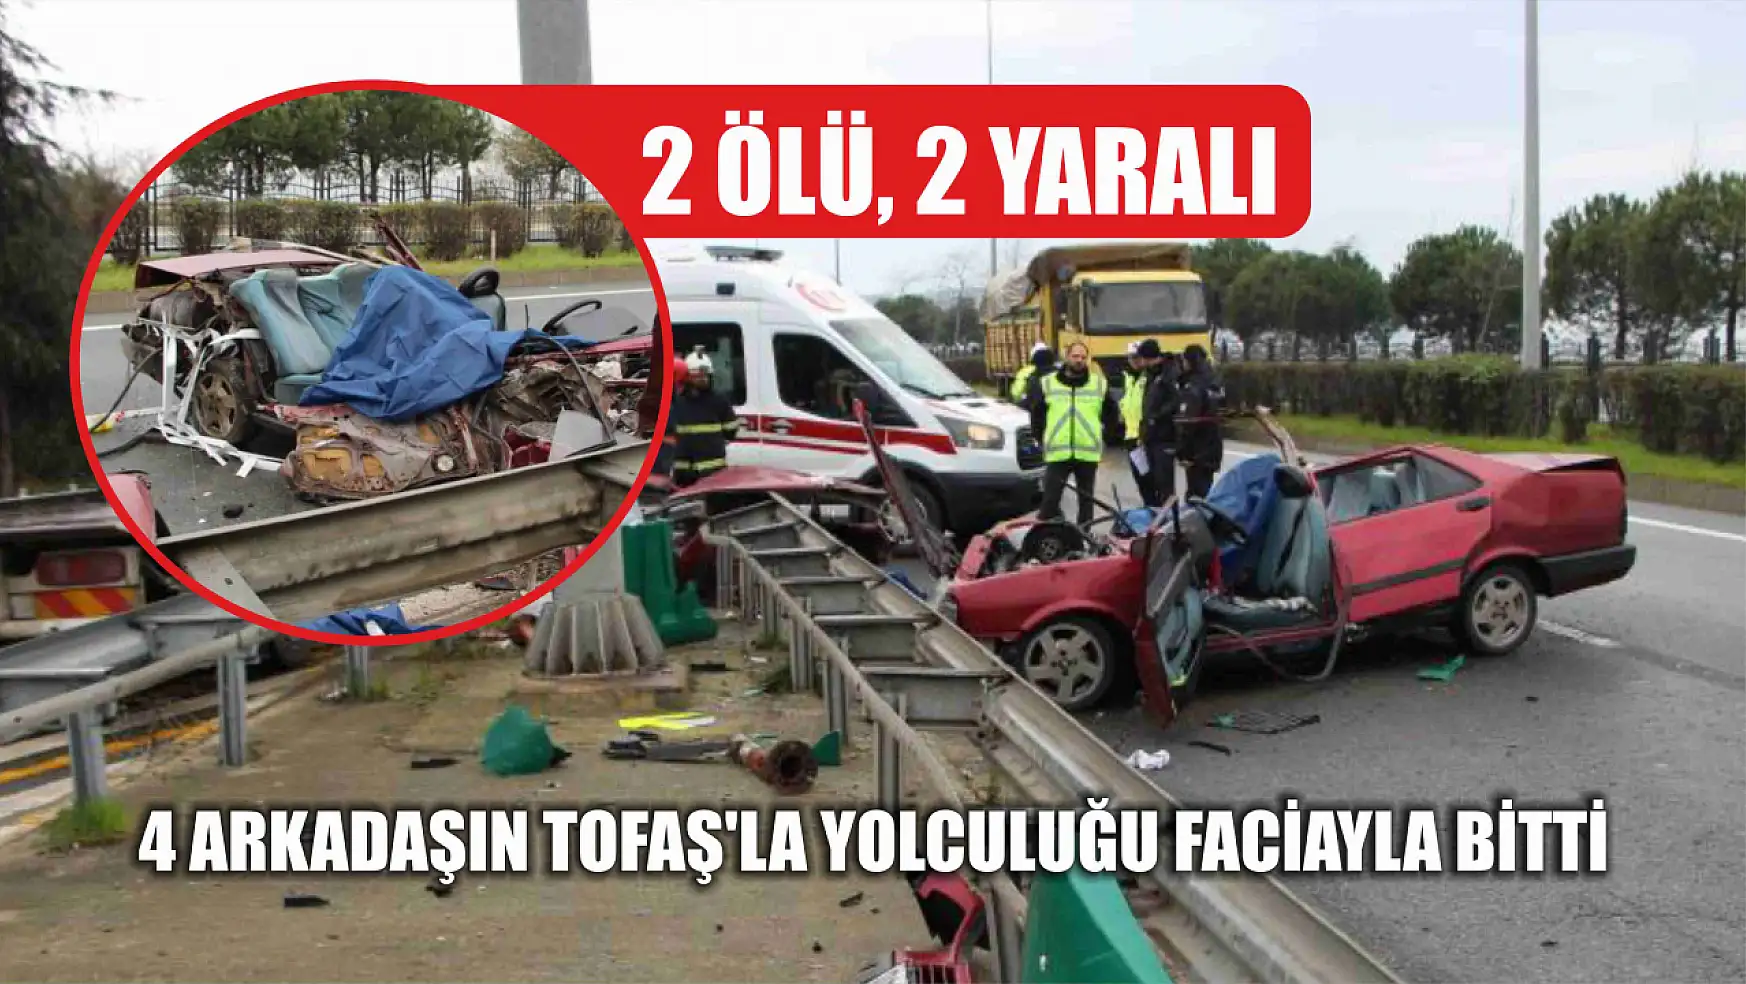 4 arkadaşın Tofaş'la yolculuğu faciayla bitti: 2 ölü, 2 yaralı